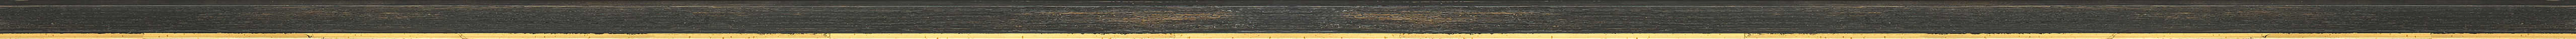 CONTEMPORARY HANDMADE BLACK FRAME frame